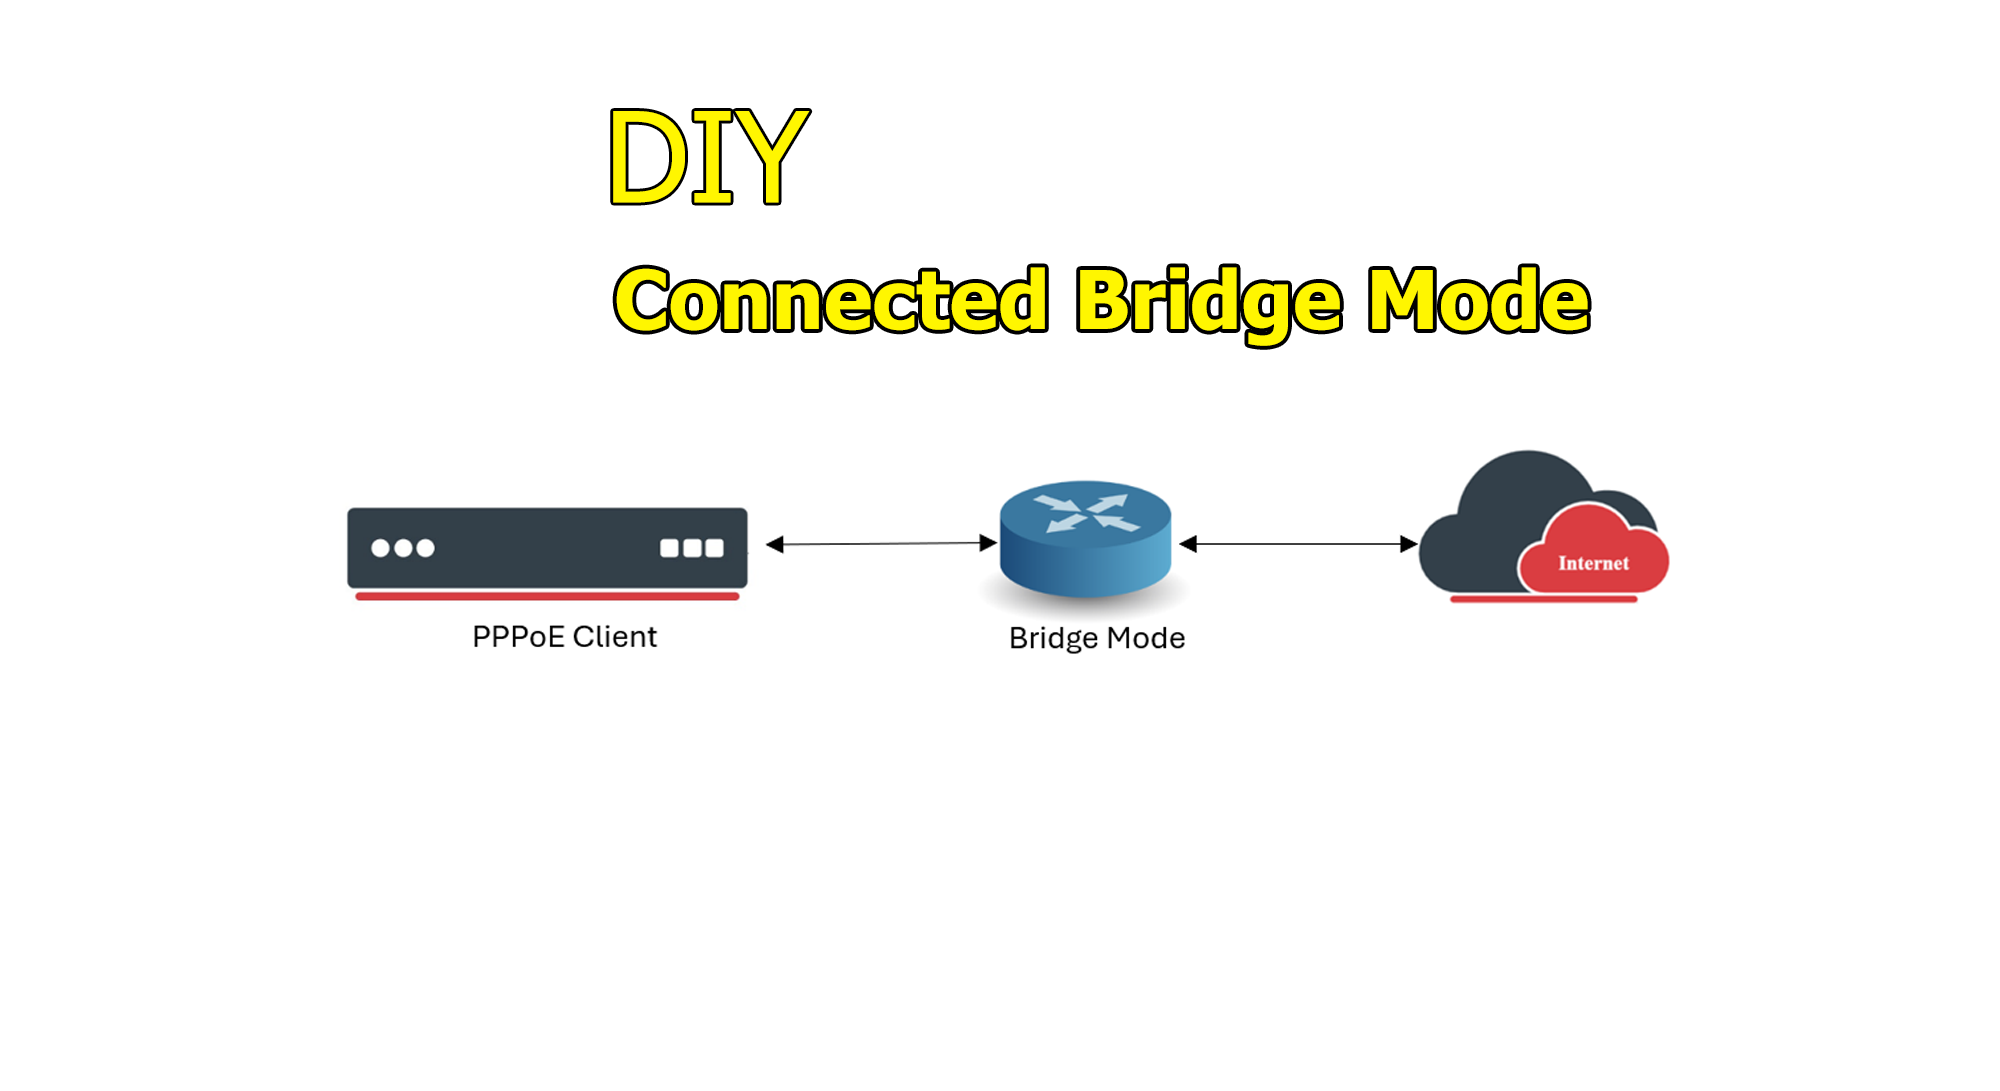 Images/Blog/9qGn3tyX-Bridge-Mode.png